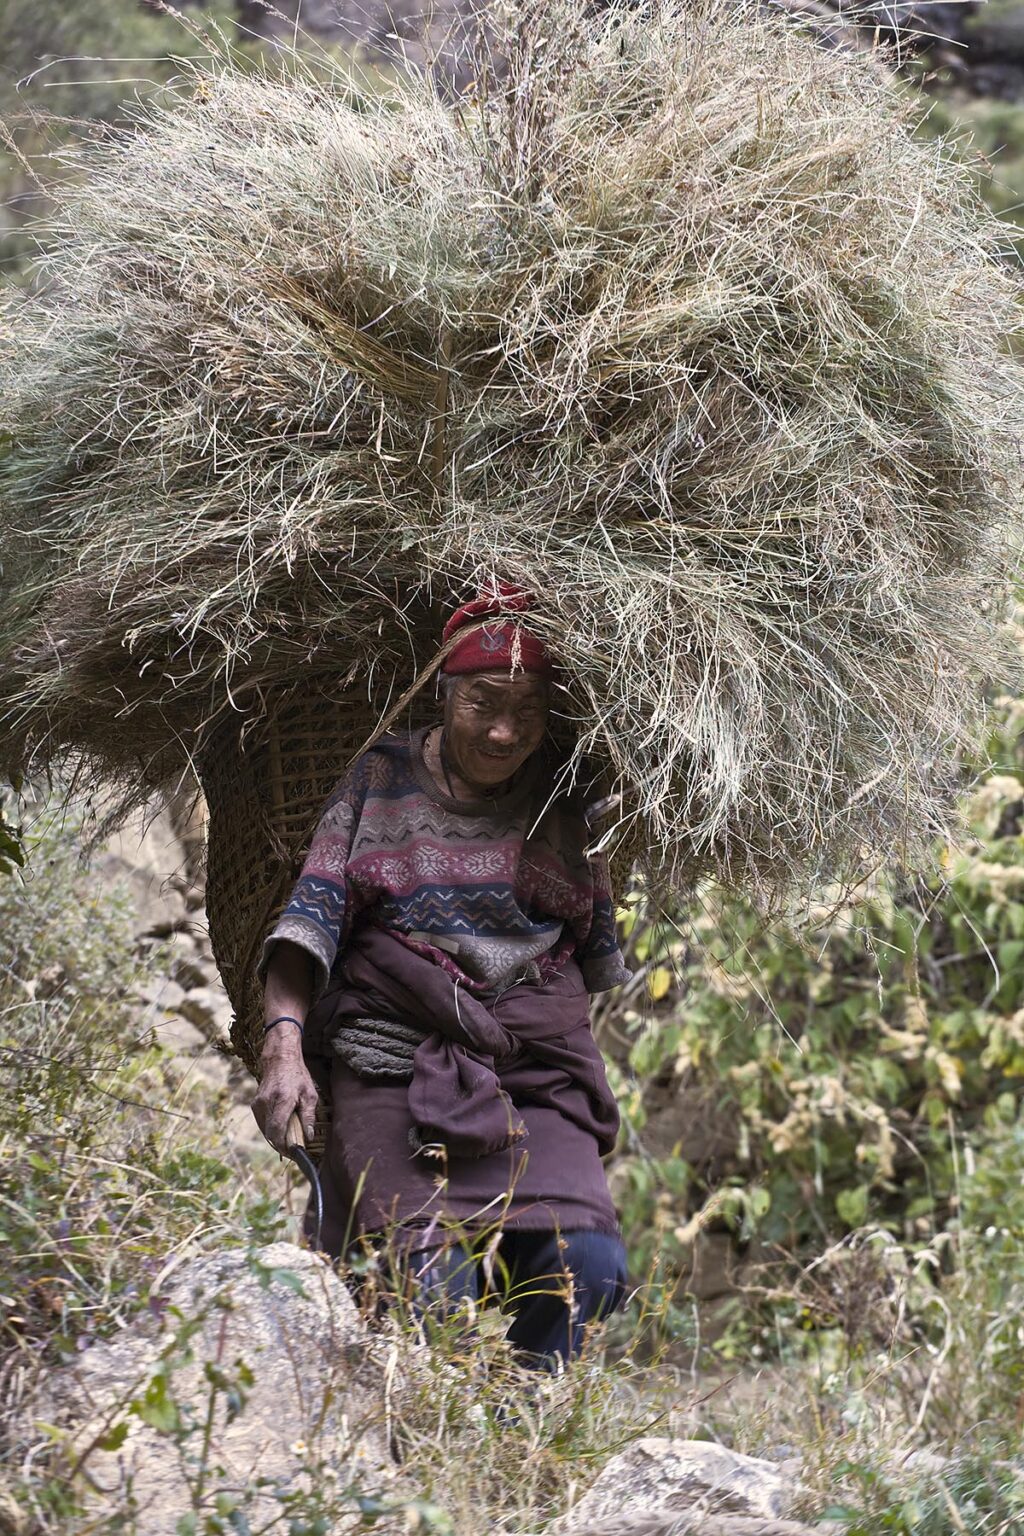 GRASS is harvest for livestock in the village of BIHI - AROUND MANASLU TREK, NEPAL